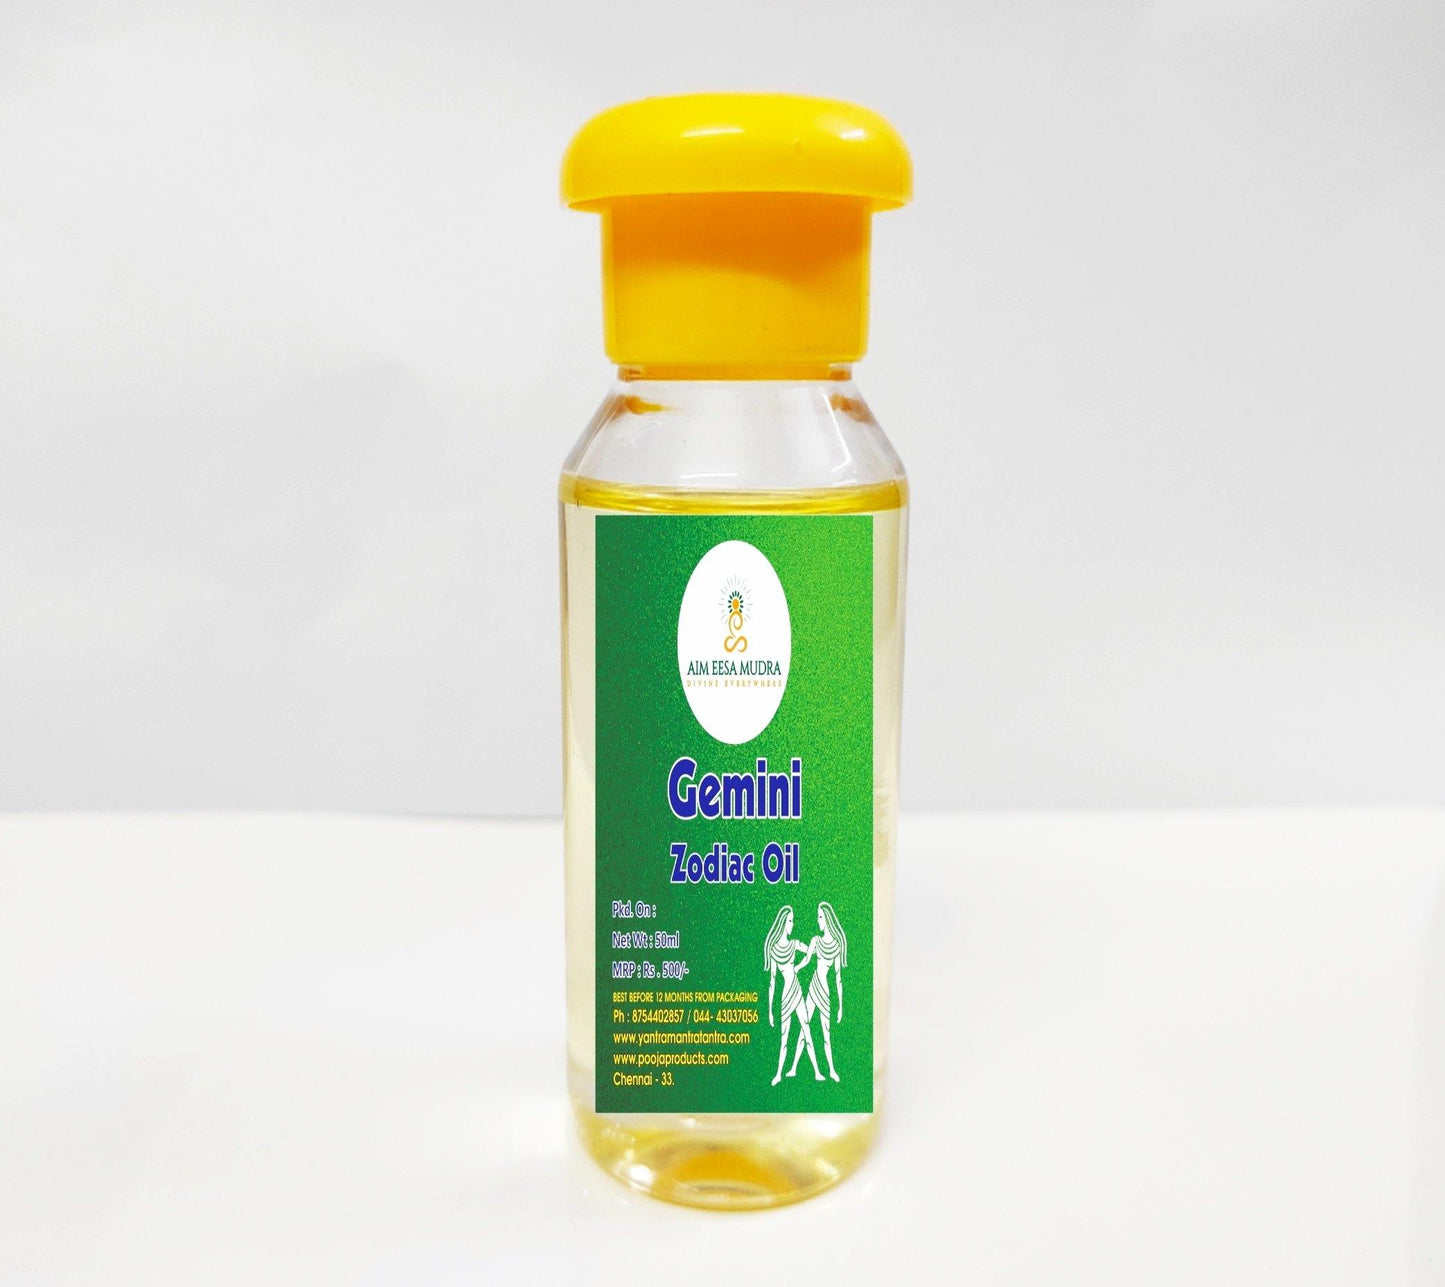 Zodiac Oil Gemini (50ml)  (𝗧𝗛𝗜𝗦 𝗣𝗥𝗢𝗗𝗨𝗖𝗧 𝗔𝗩𝗔𝗜𝗟𝗕𝗟𝗘 𝗢𝗡𝗟𝗬 𝗜𝗡𝗦𝗜𝗗𝗘 𝗜𝗡𝗗𝗜𝗔) - PoojaProducts.com